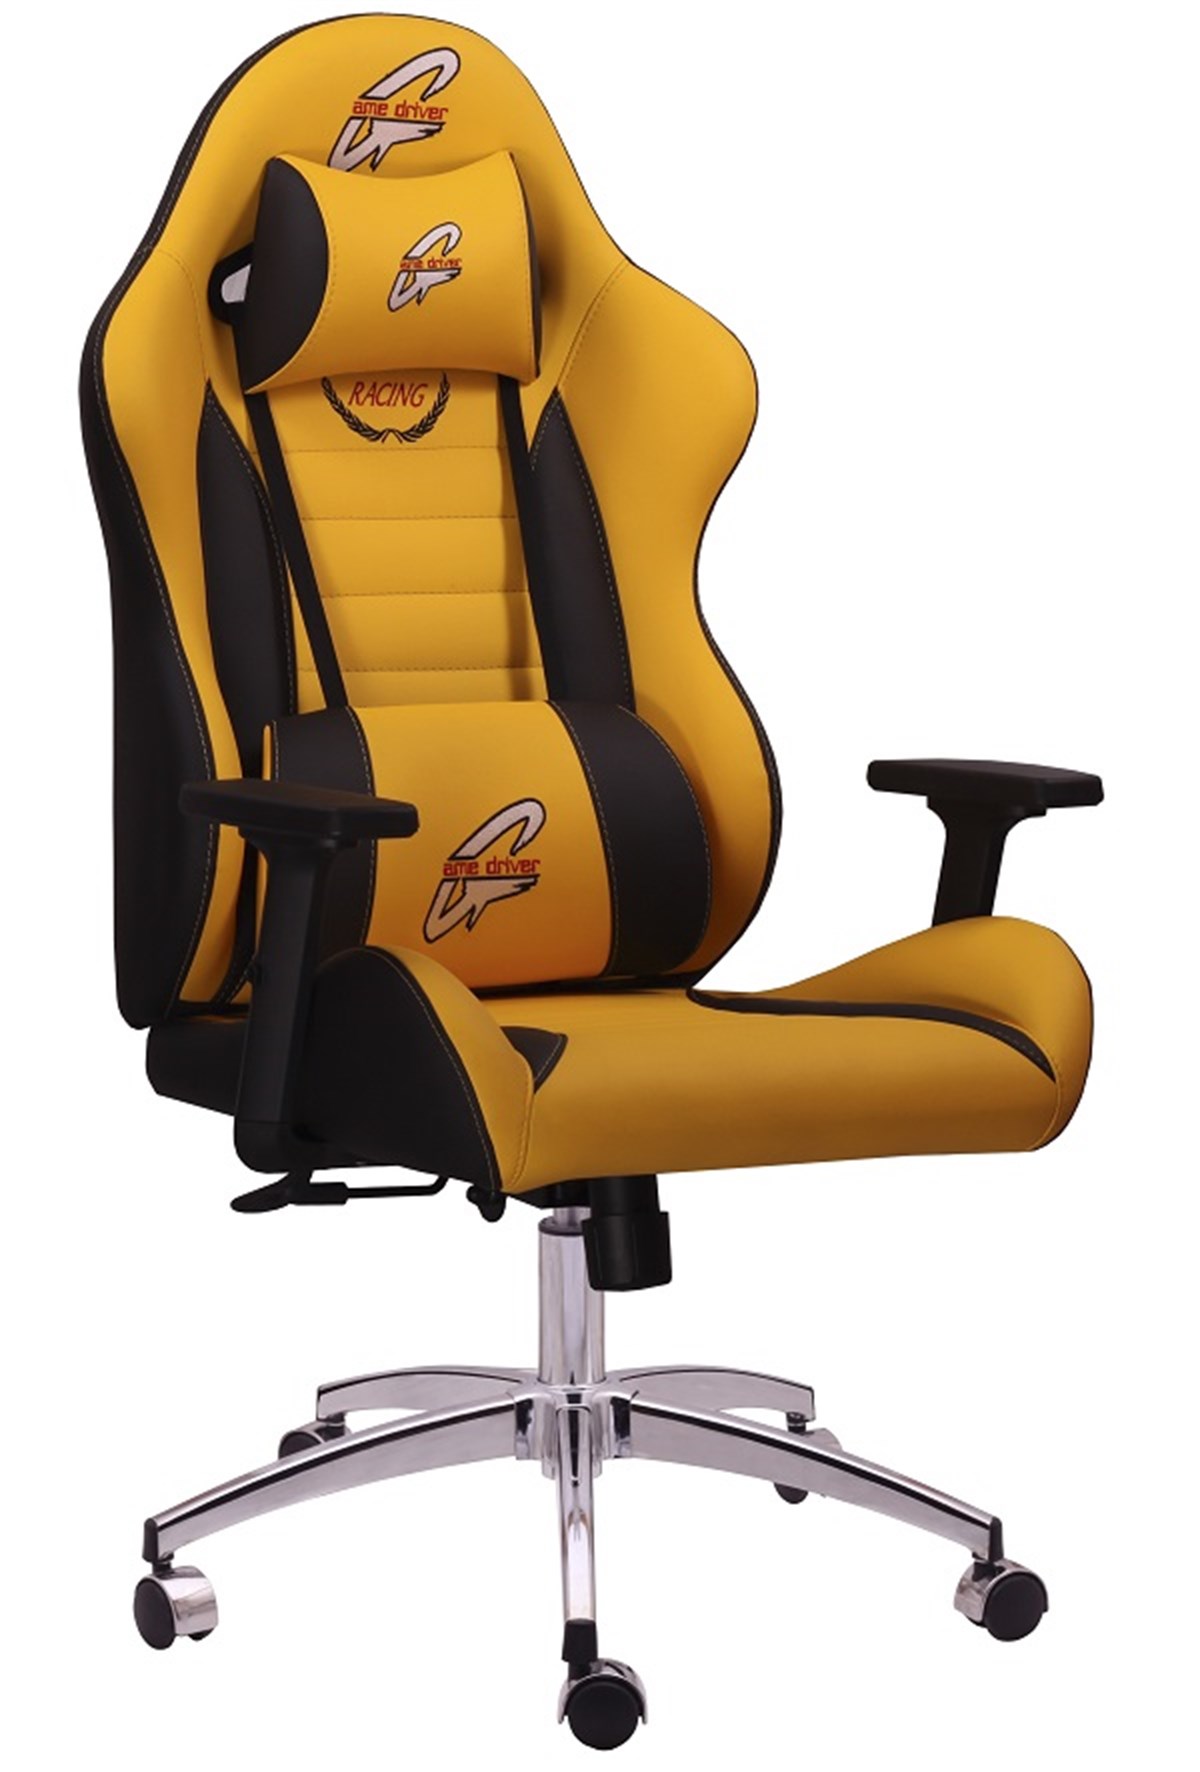 Büronet Ofis Mobilyaları | Game Driver Racing Oyuncu Koltuğu Sarı